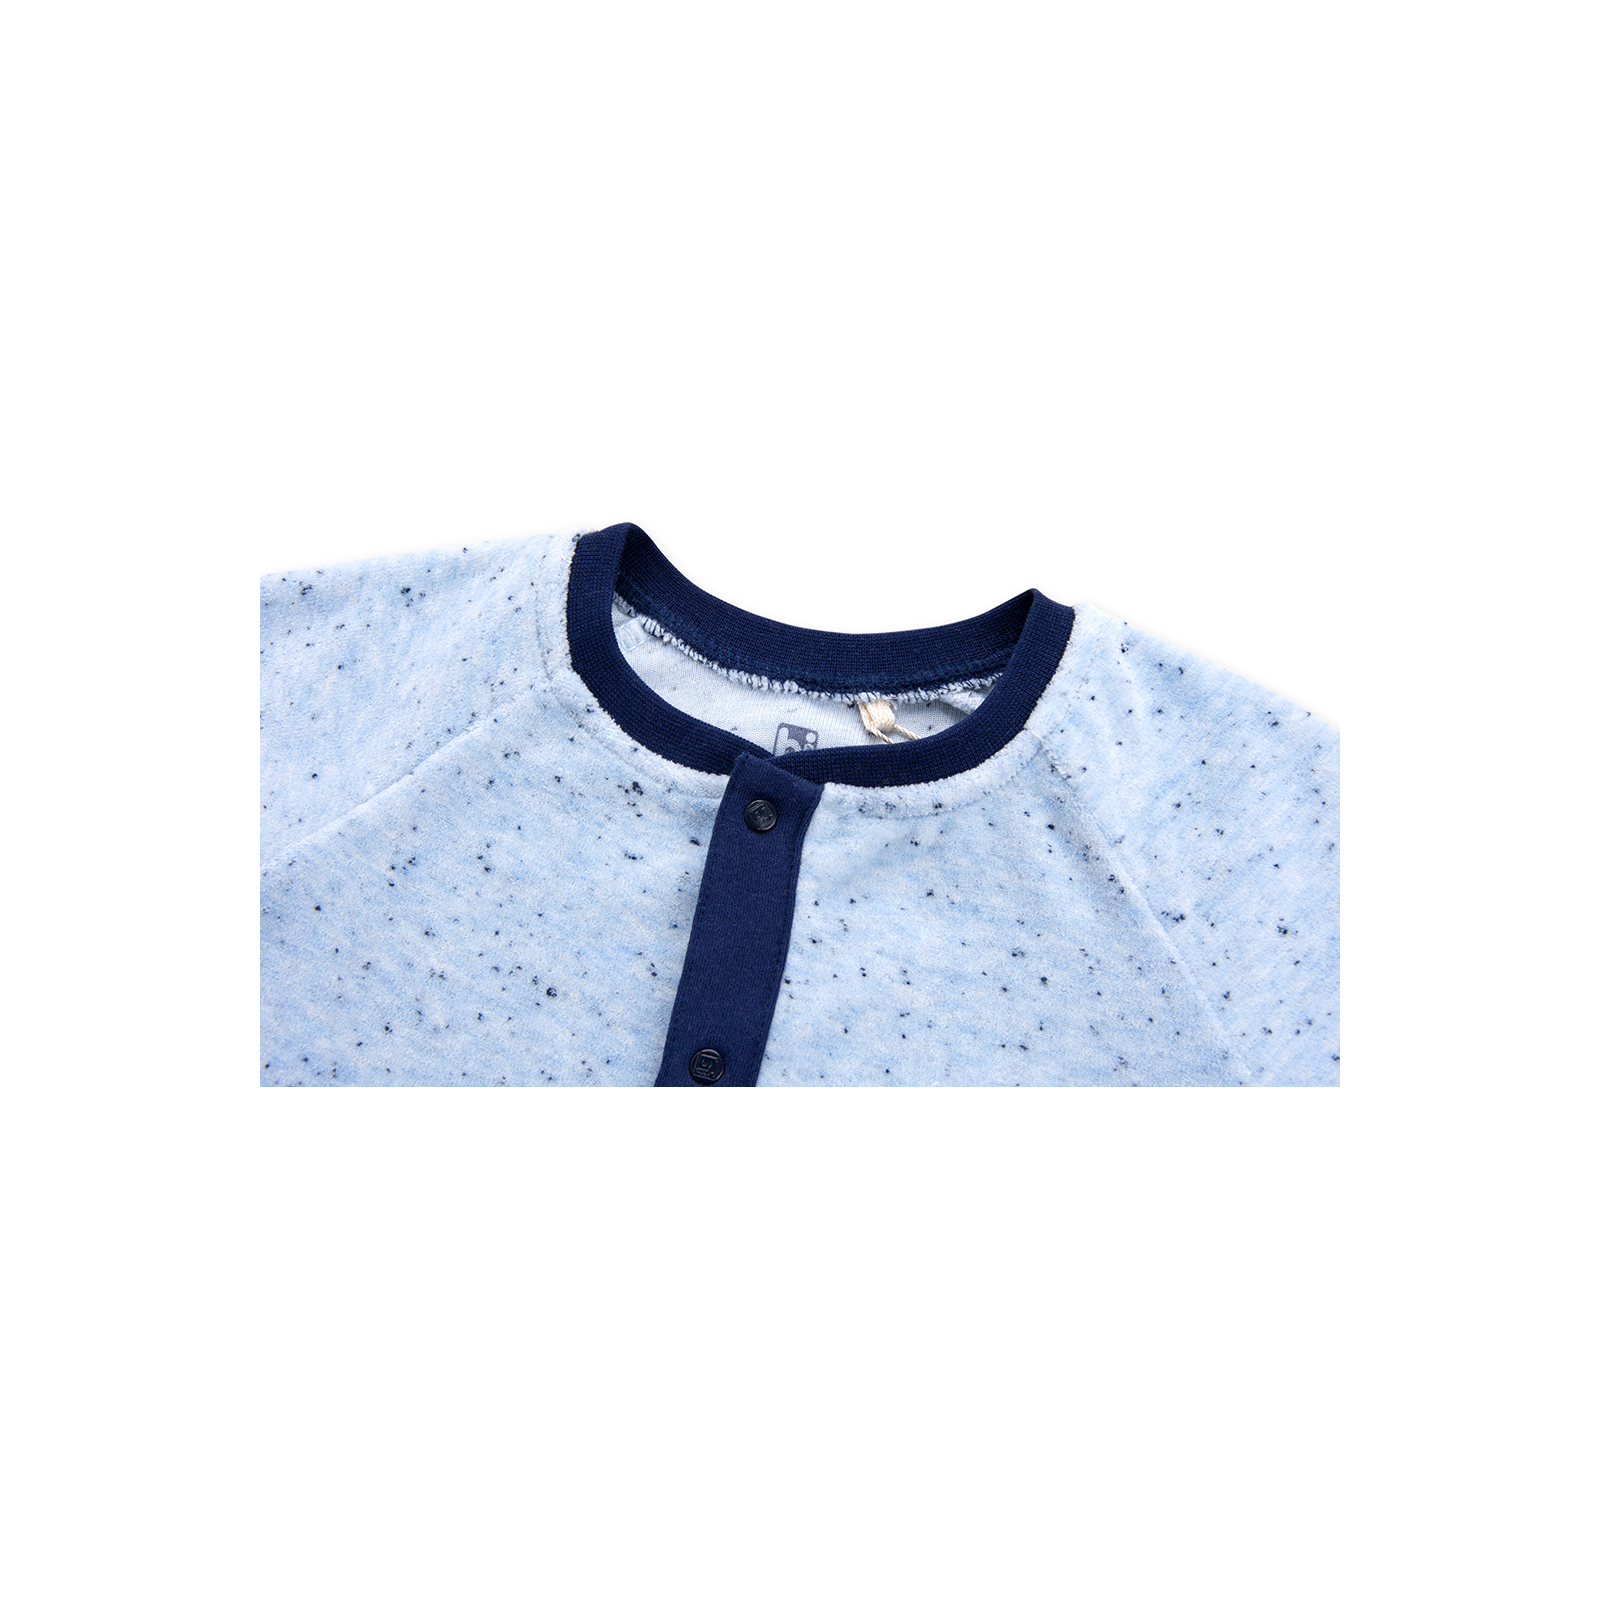 Человечек Bibaby велюровый с карманчиком "London" (60169-56B-blue) изображение 3